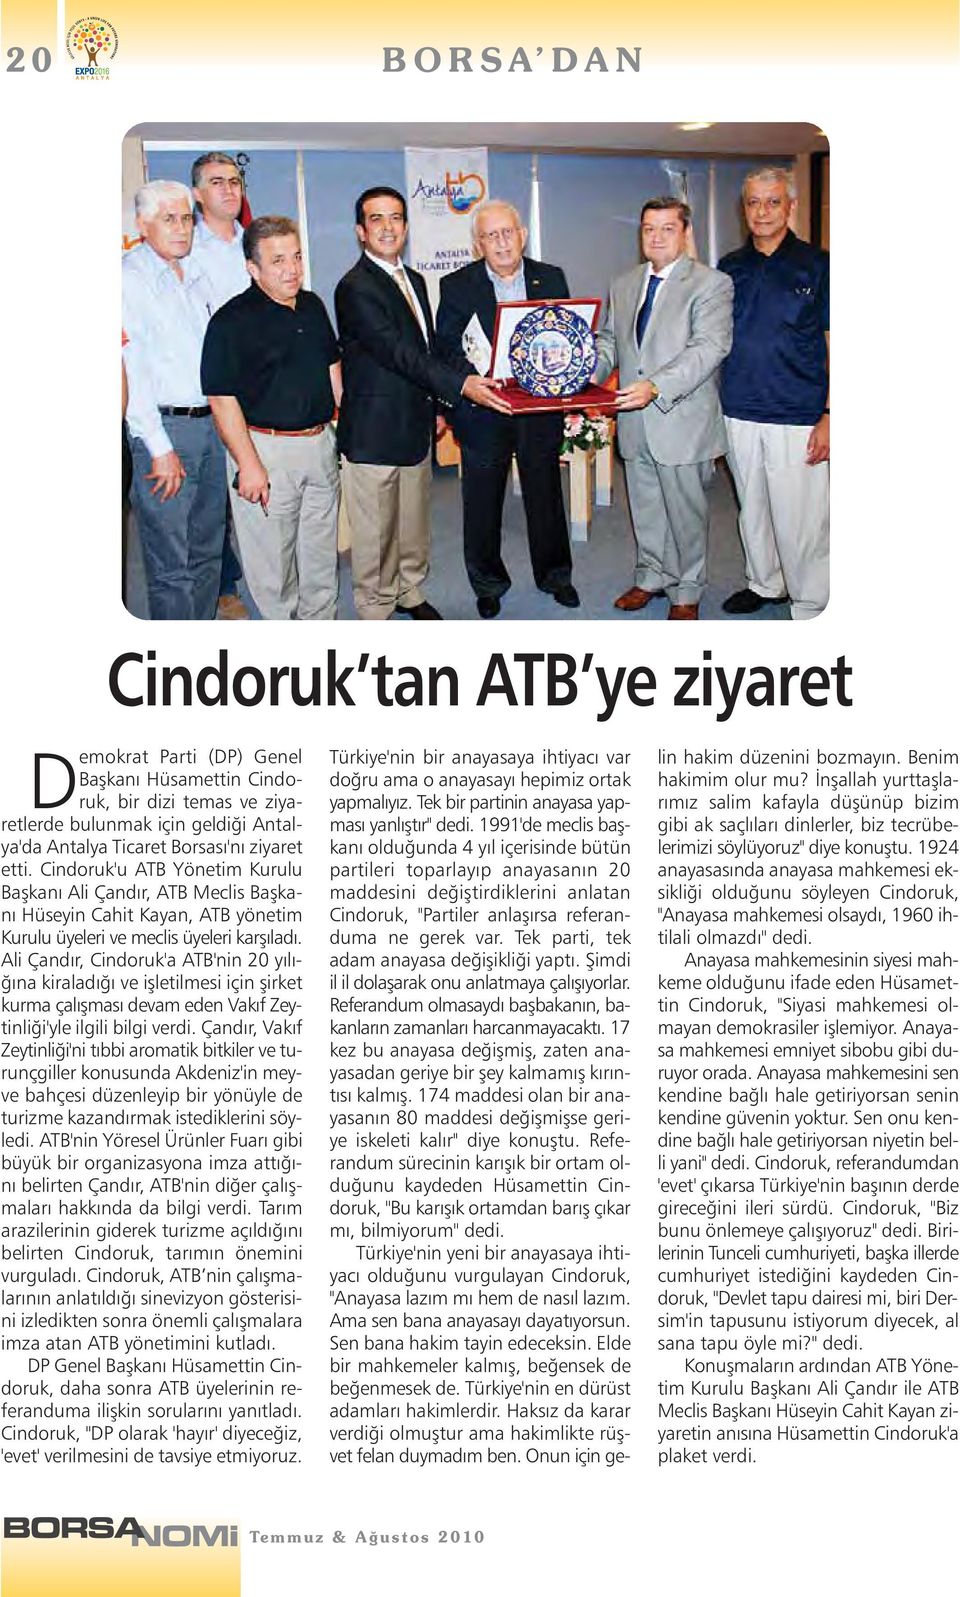 Ali Çandır, Cindoruk'a ATB'nin 20 yılığına kiraladığı ve işletilmesi için şirket kurma çalışması devam eden Vakıf Zeytinliği'yle ilgili bilgi verdi.